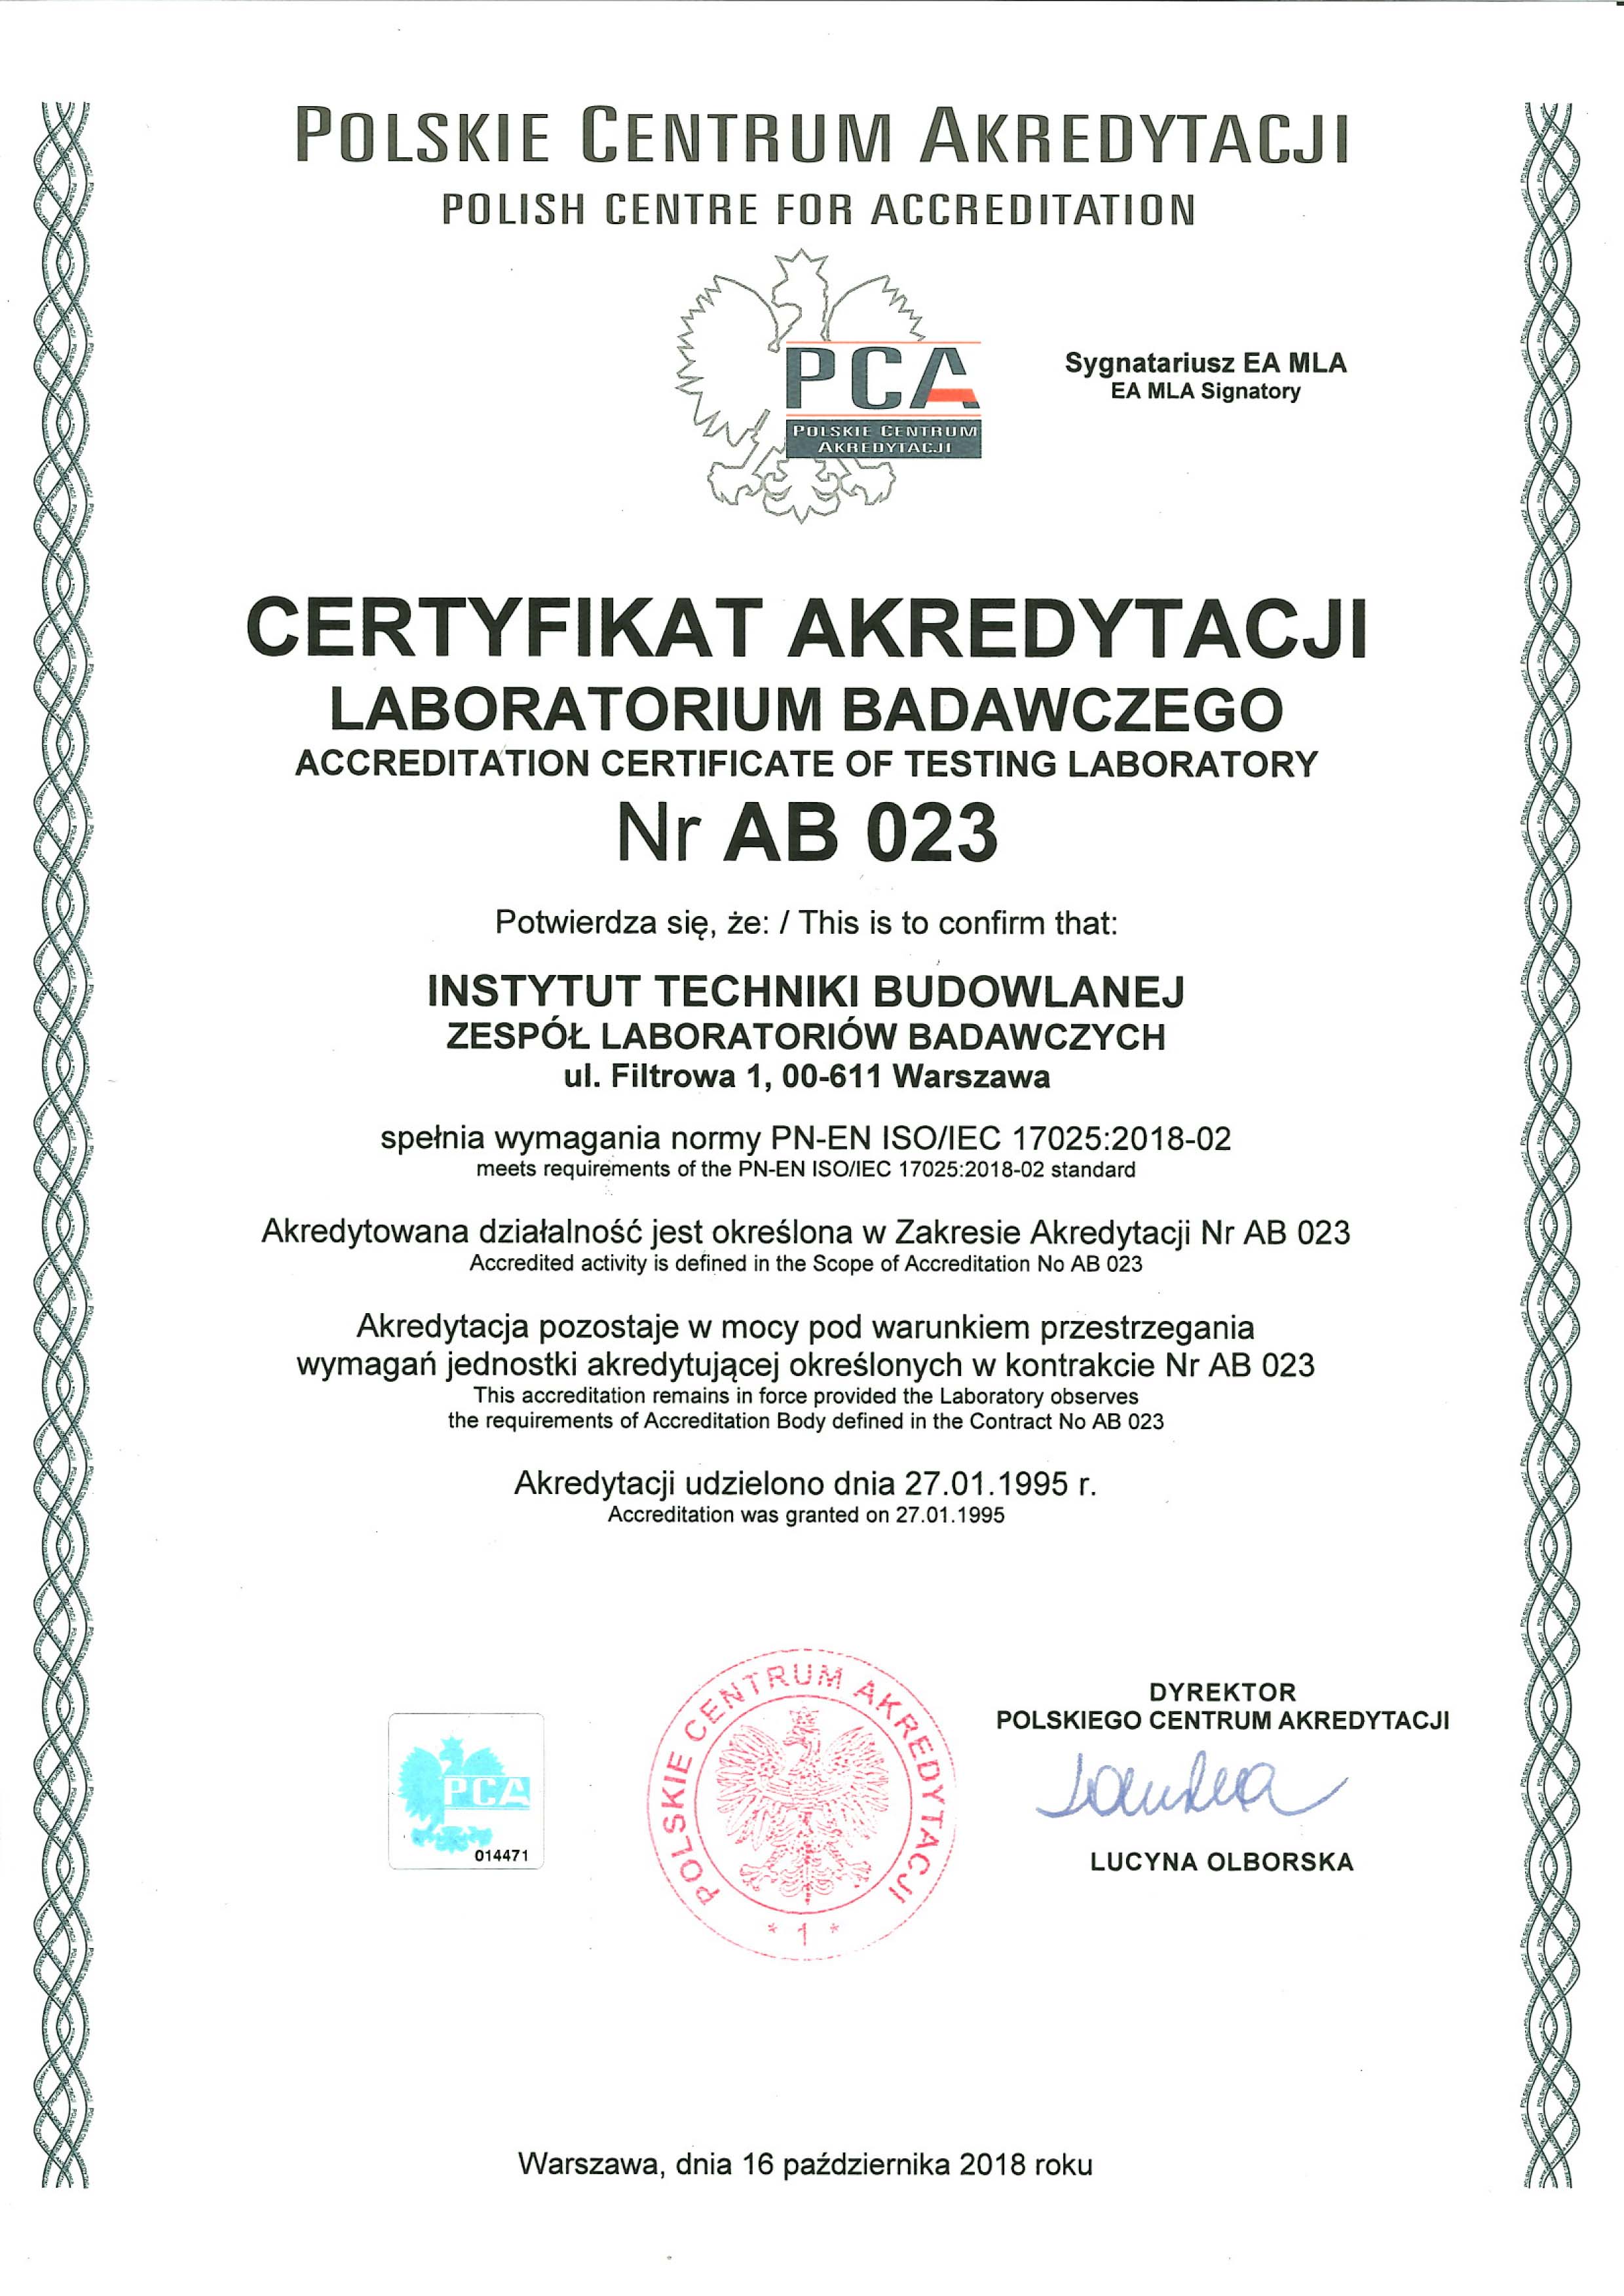 Certyfikat Akredytacji Laboratorium badawczego nr AB 023 potwierdzający spełnienie przez ITB Zespół Laboratoriów Badawczych wymagania normy PN-en ISO/EC 17025-2018-02. Akredytowana działalność określona jest w Zakresie Akredytacji Nr AB 023.